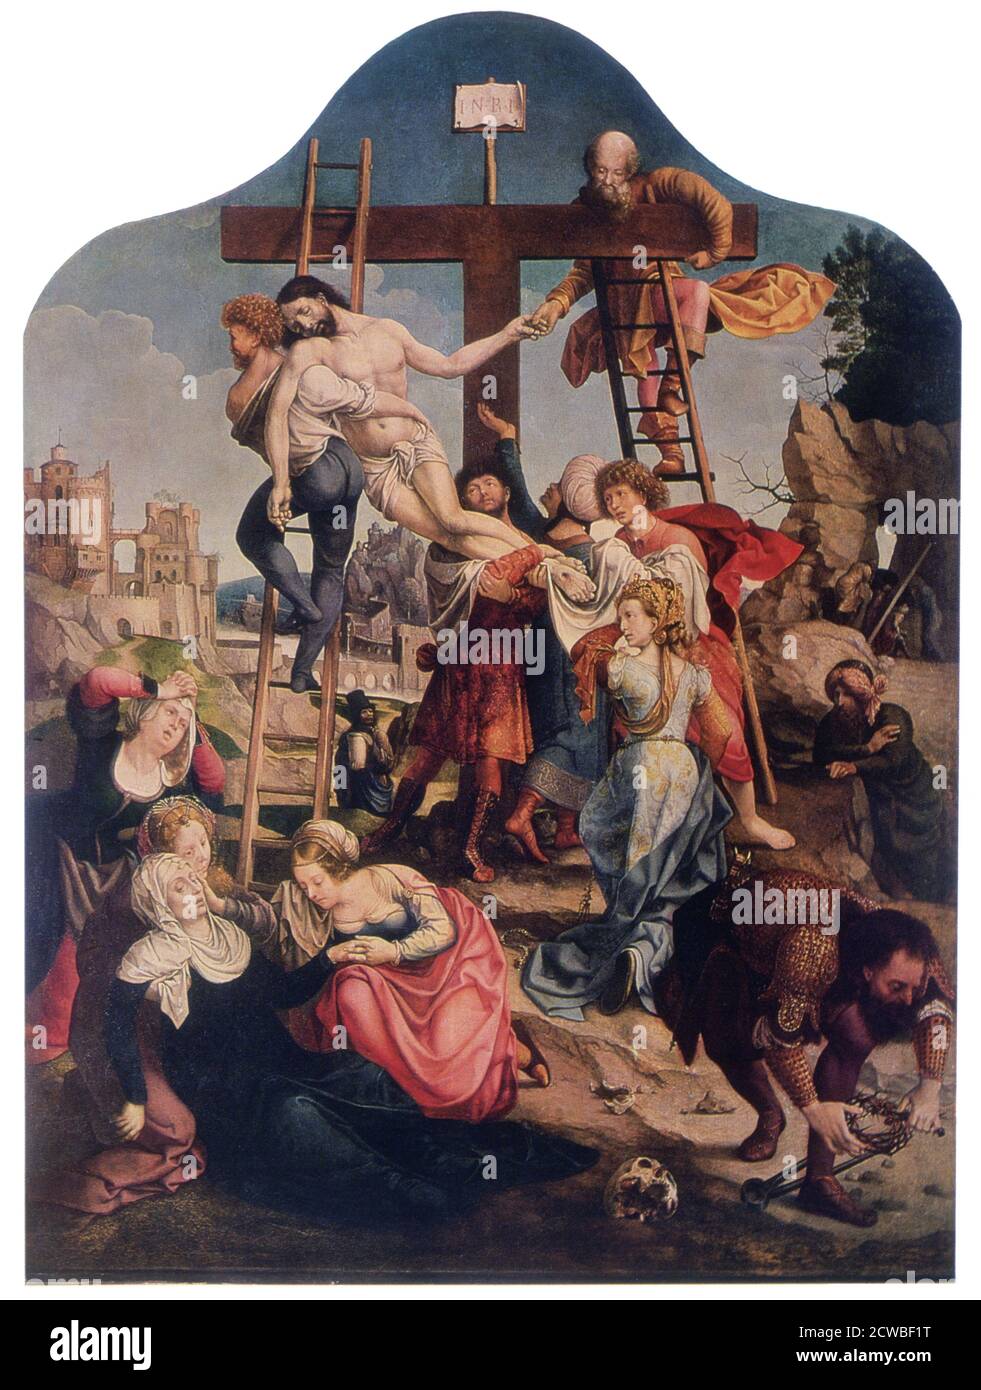 The Descent from the Cross', c1520 artista: Jan Gossaert. Gossaert (c1478-1532) è solitamente considerato il fondatore del movimento d'arte romanico, il primo gruppo di pittori fiamminghi ad essere influenzato dal Rinascimento italiano. Dal Museo dell'Ermitage di Stato, San Pietroburgo. Foto Stock